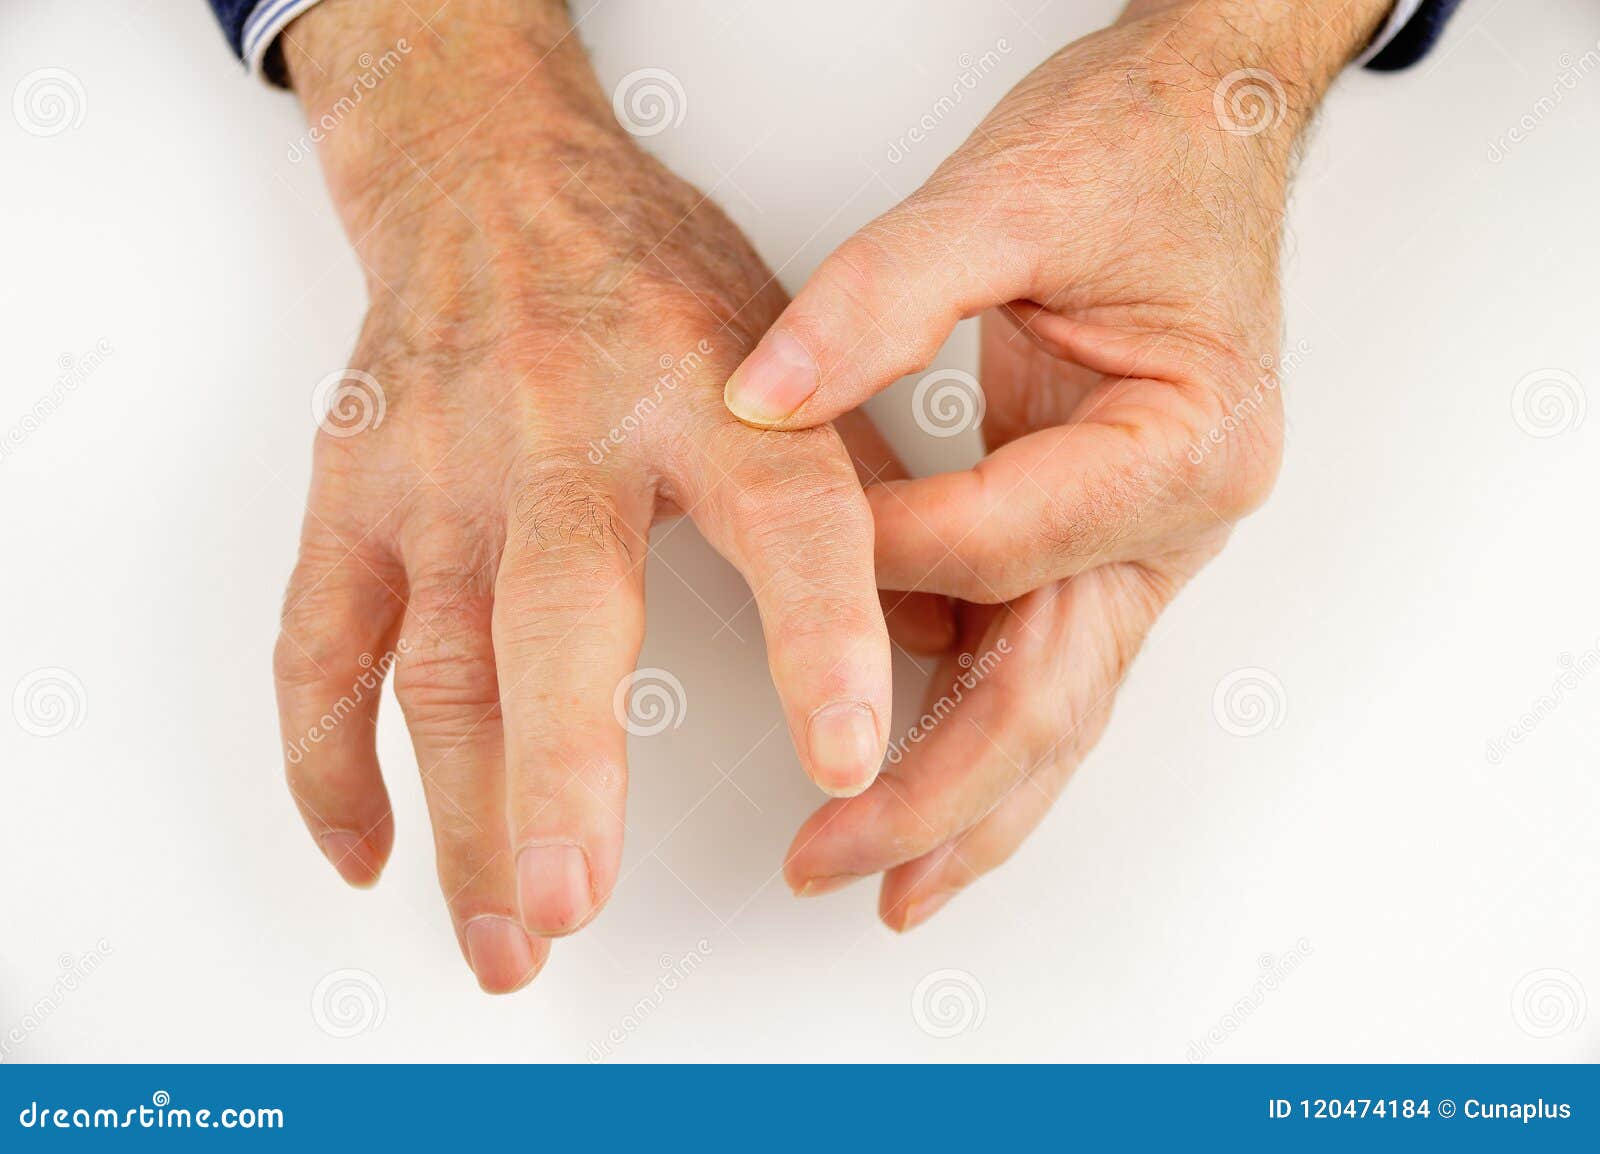 Память пальцев рук. Системная склеродермия руки.